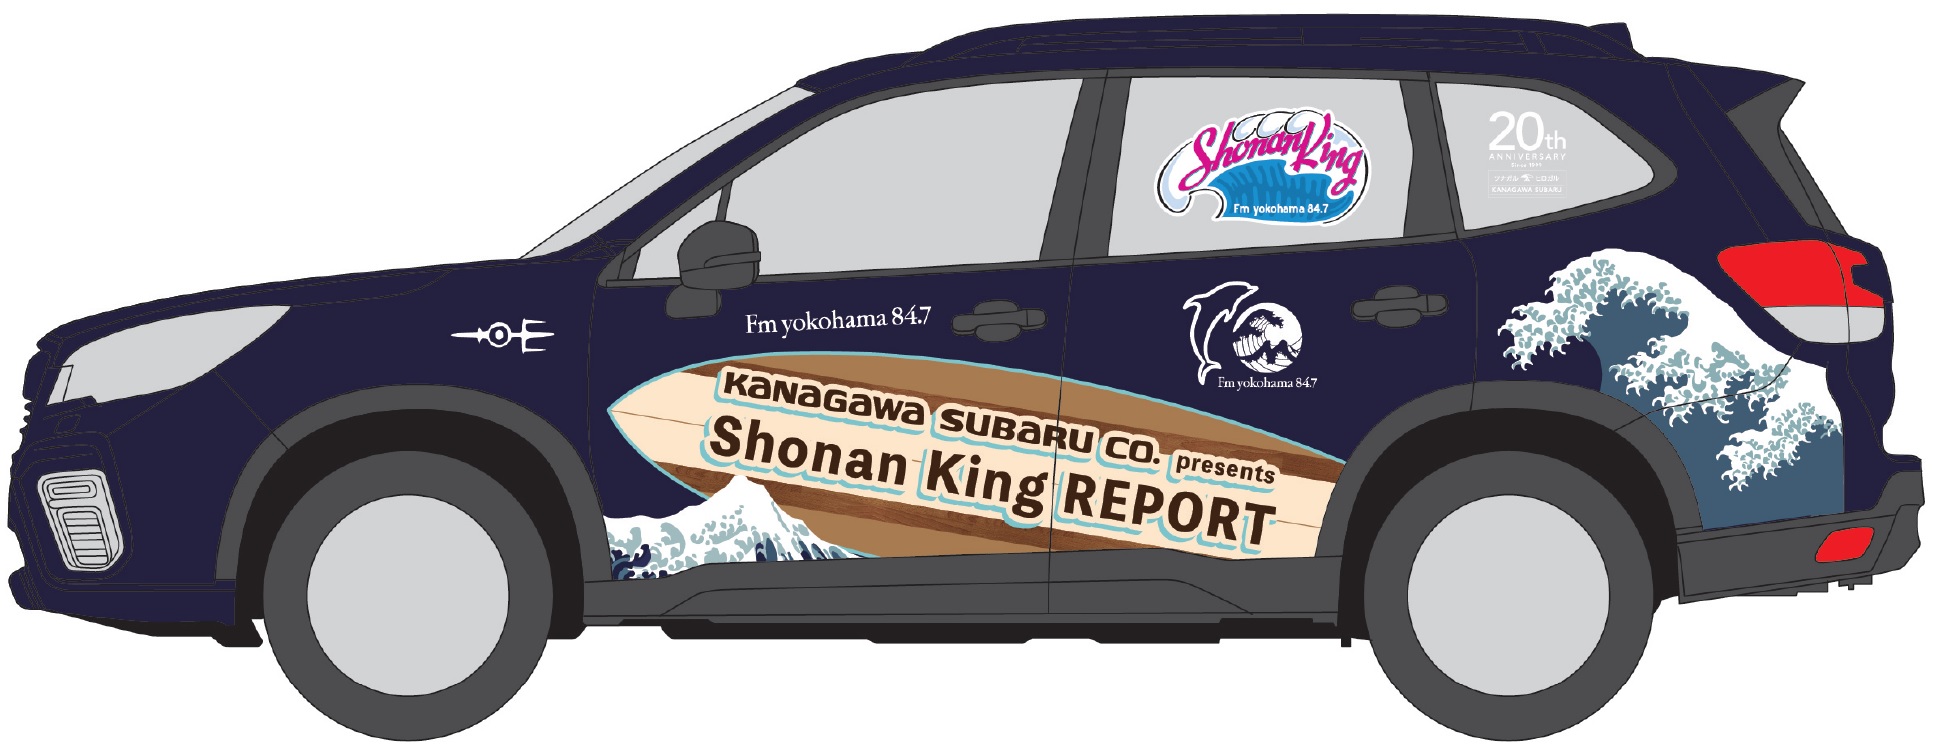 Fmヨコハマ Shonan King Report 今年も神奈川スバル 令和元年は 神奈川 にゆかりのある3社のトリプルコラボ Fmヨコハマのプレスリリース